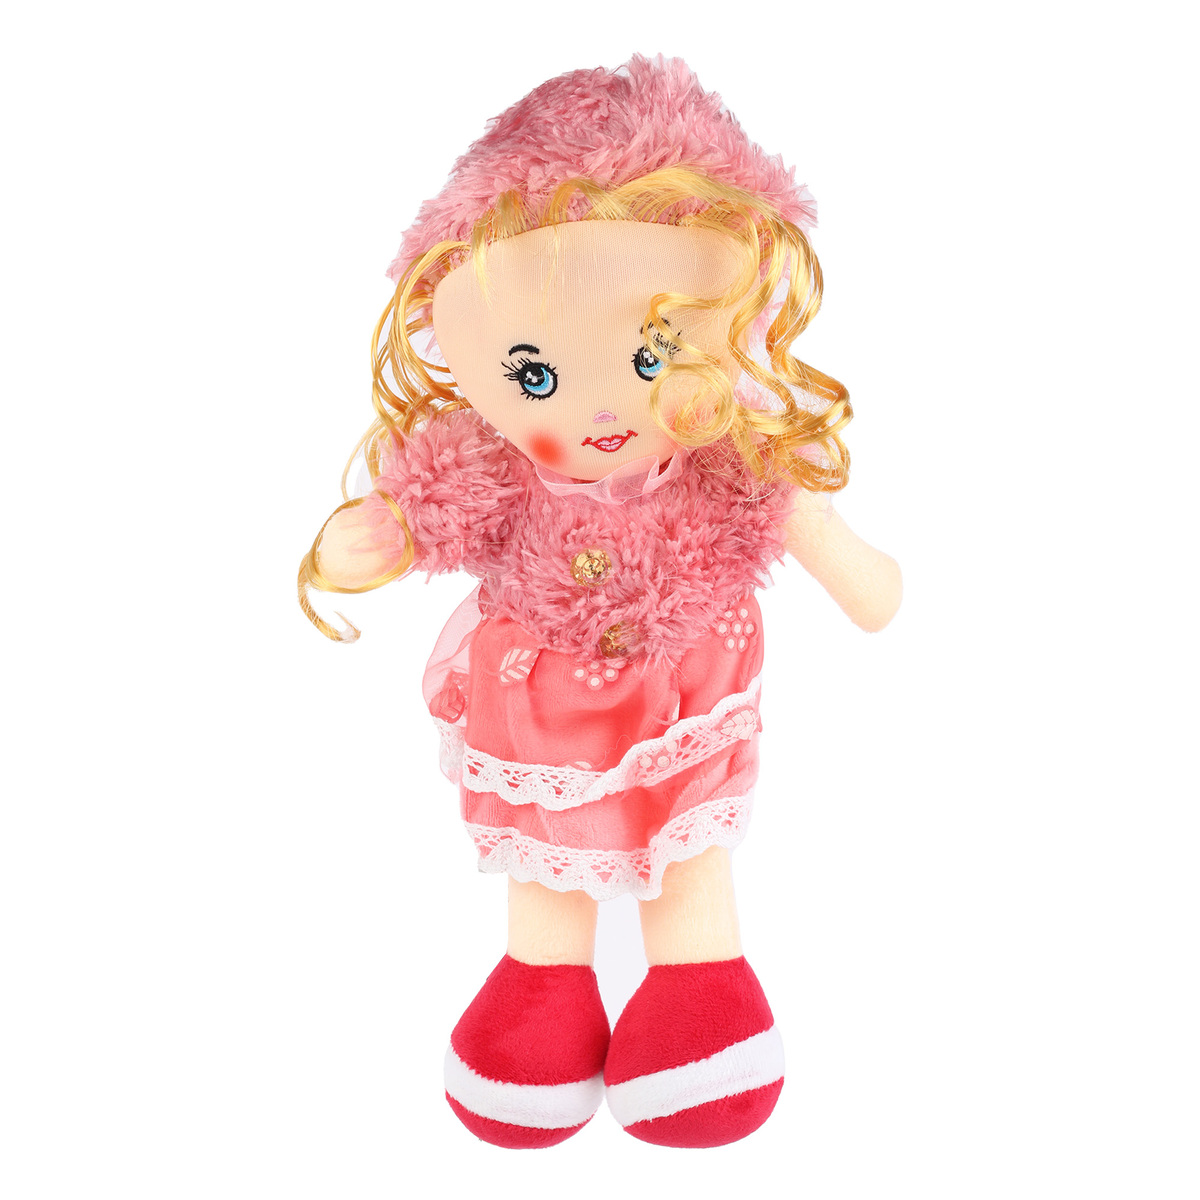 Fabiola Candy Doll 646-3-1 35cm Assorted